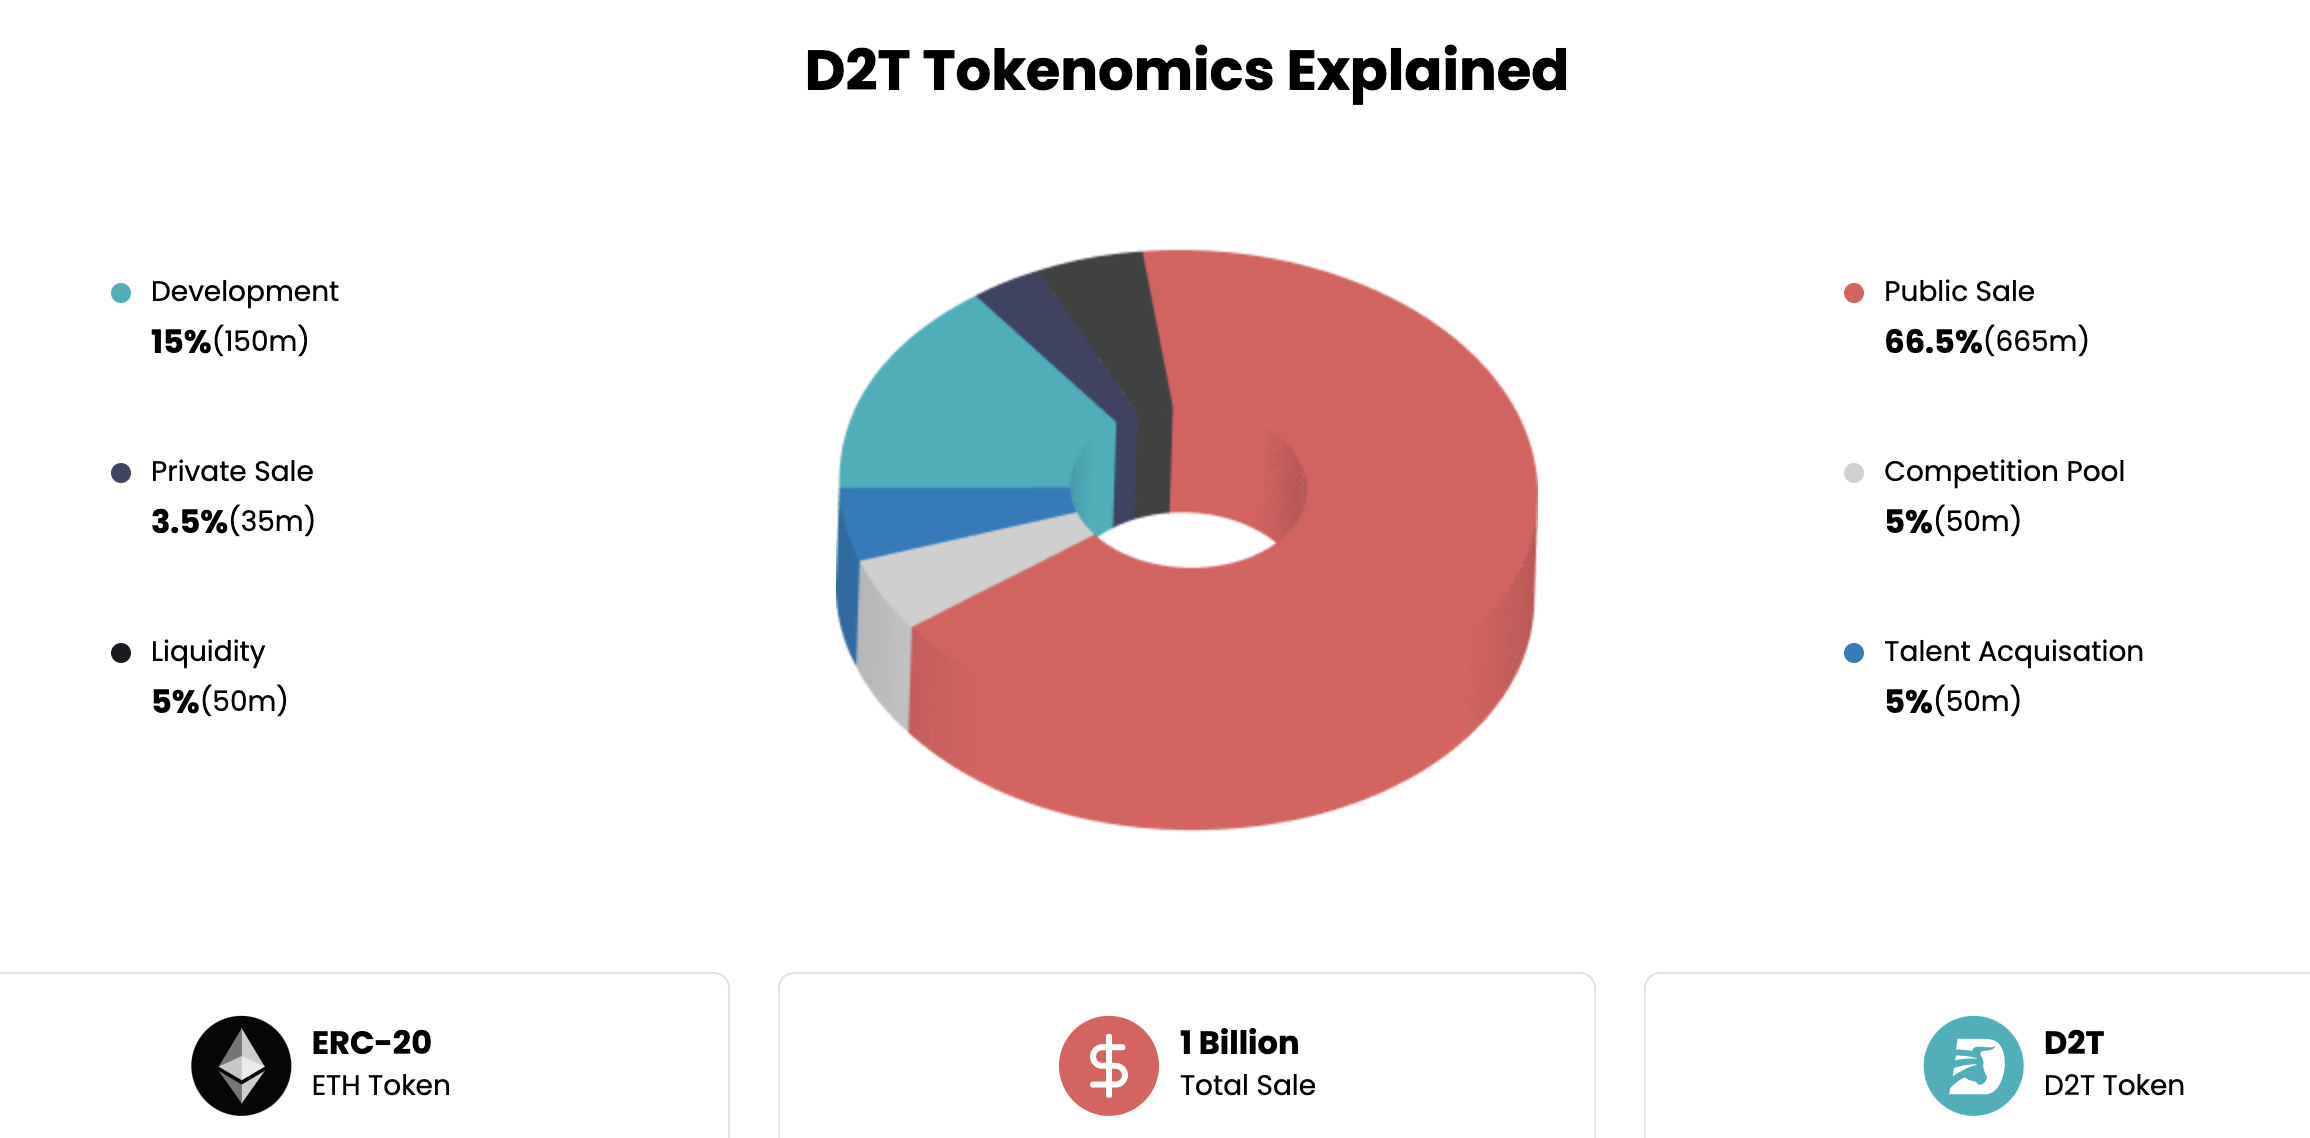 أفضل روبوتات تداول العملات المشفرة: D2T tokenomics